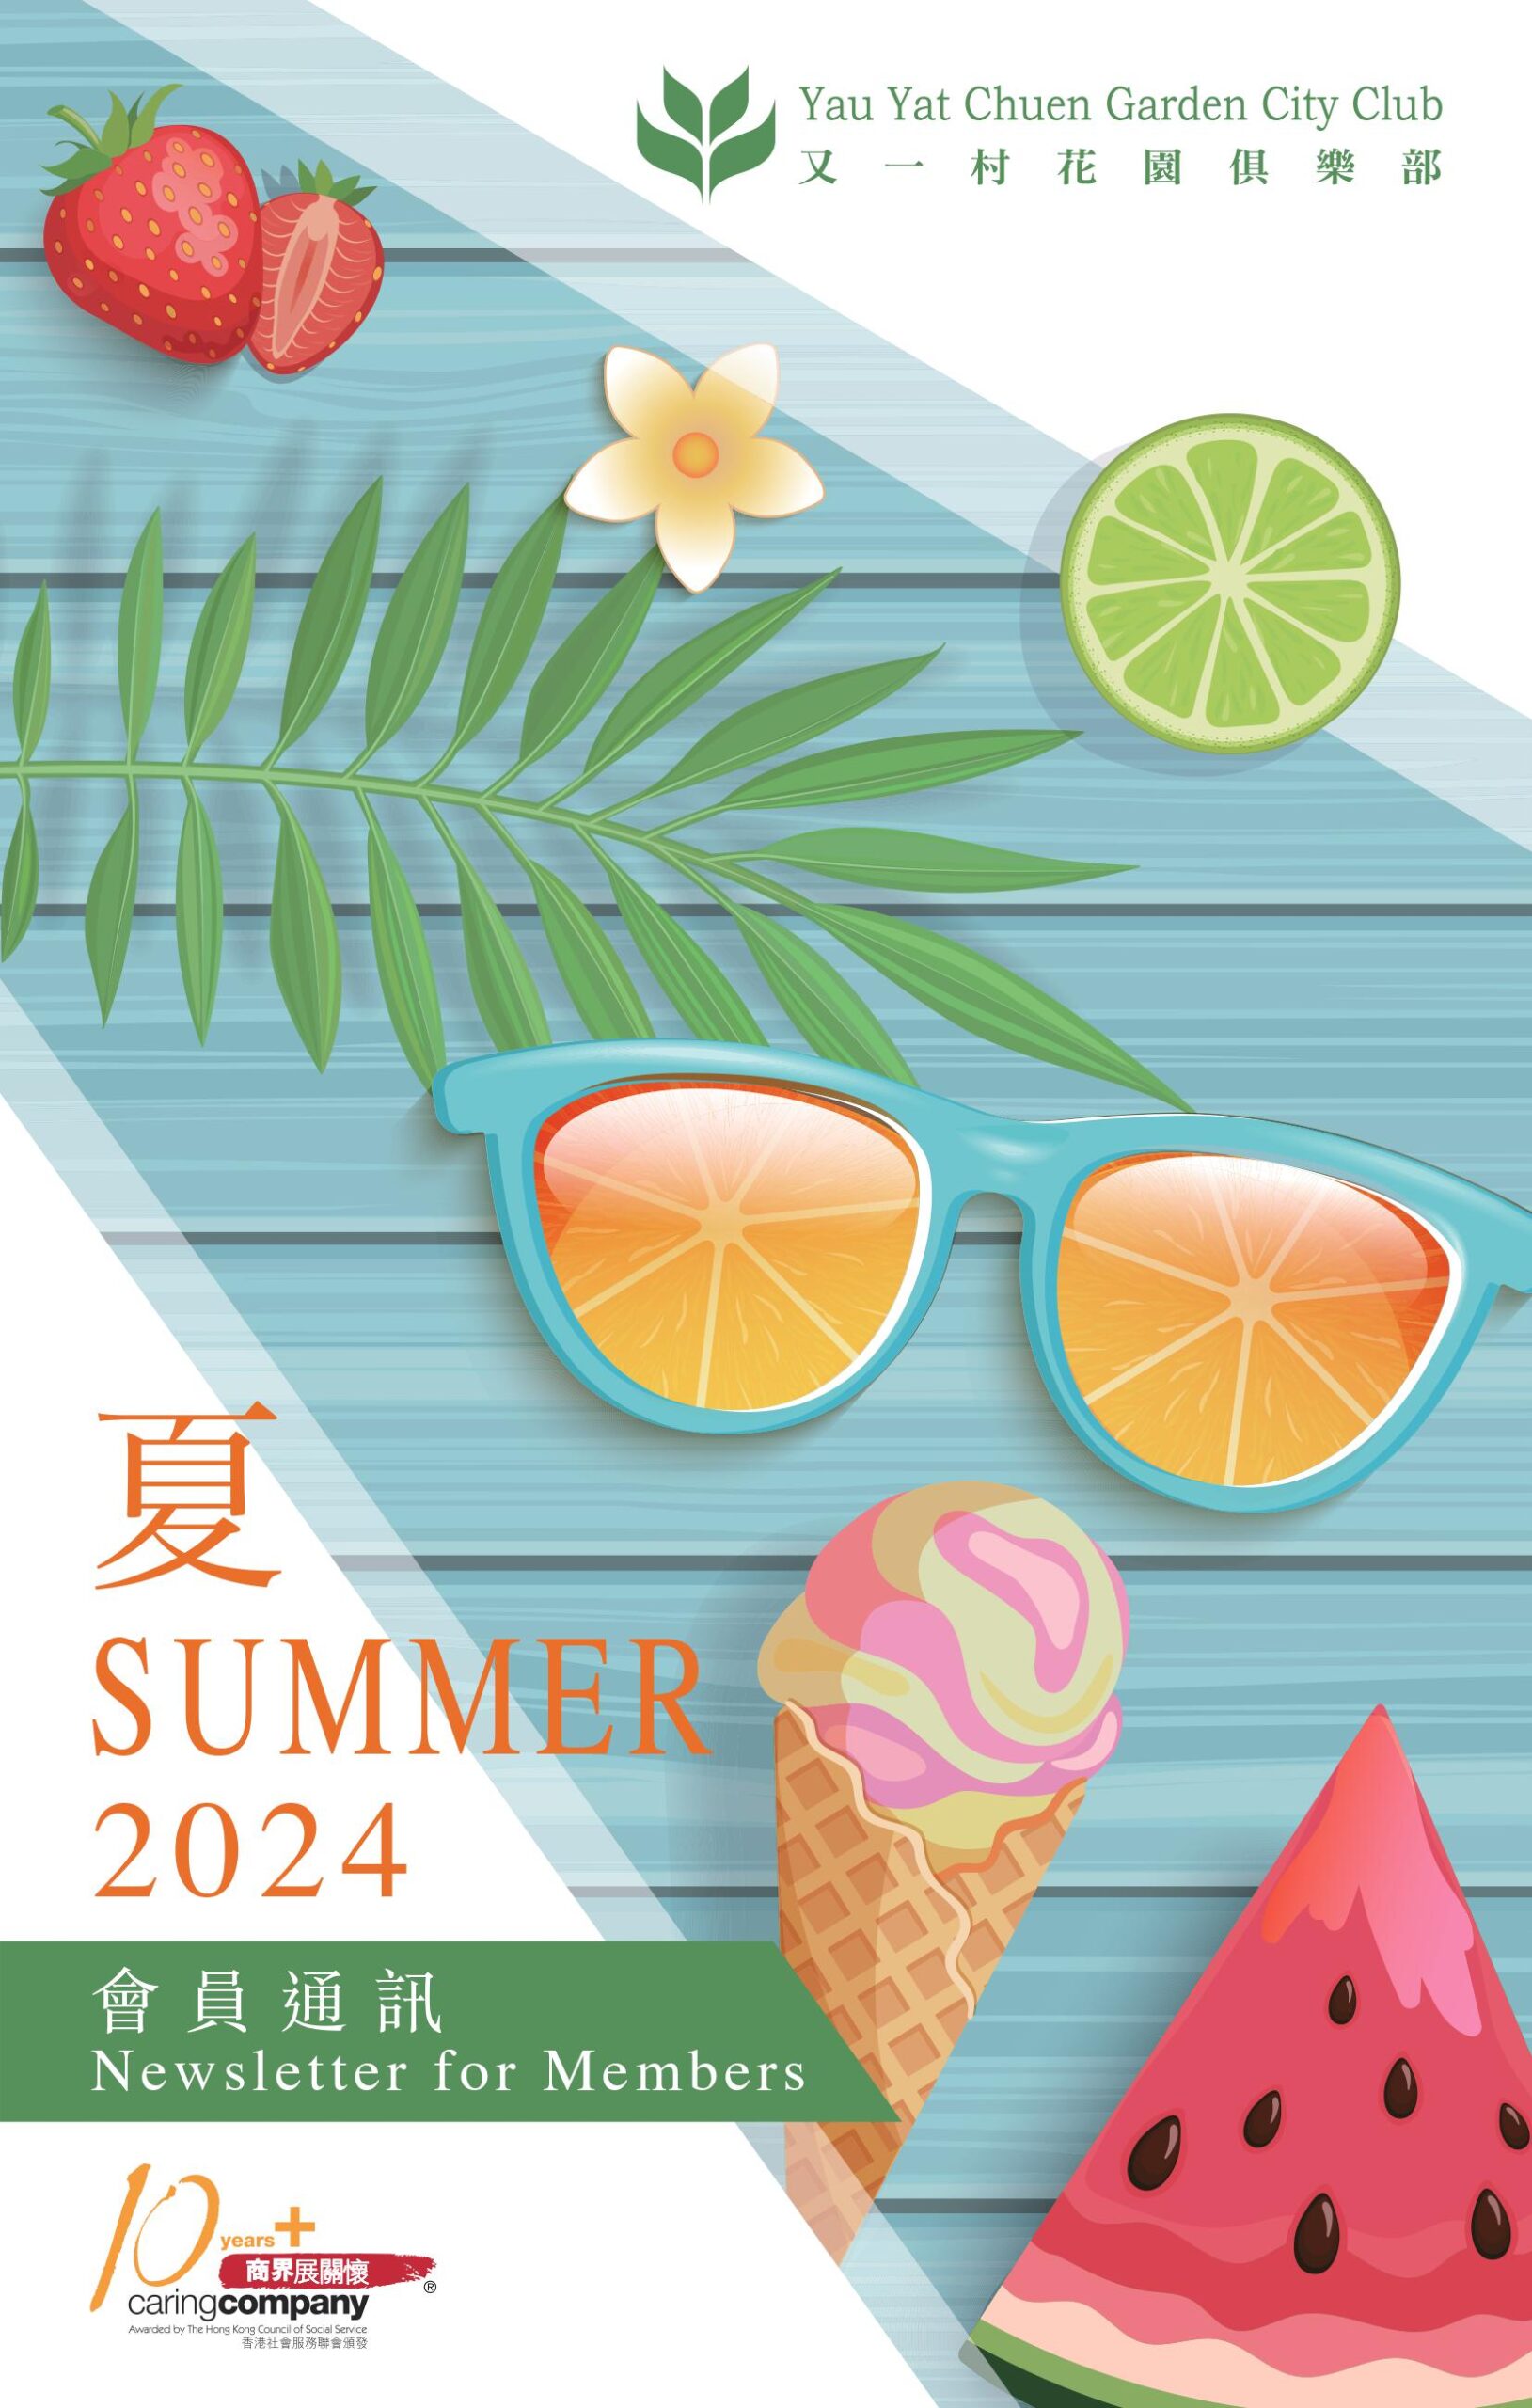 Summer Newsletter 2024